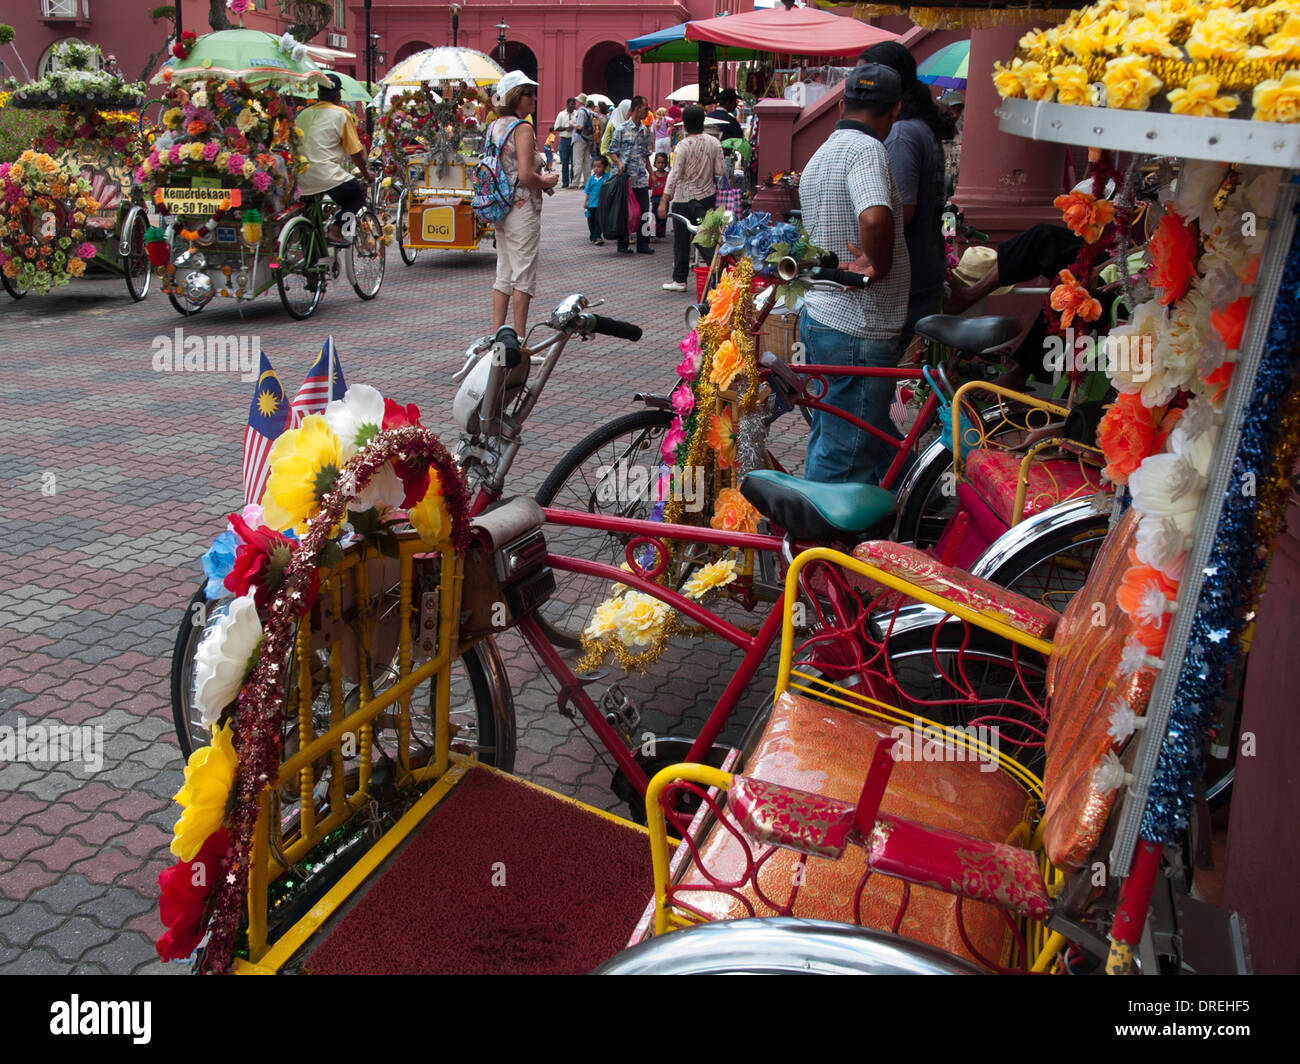 Vivacemente decorate ciclo-rickshaws attendere per portare i turisti intorno alla piazza olandese area di Melaka, Malaysia Foto Stock